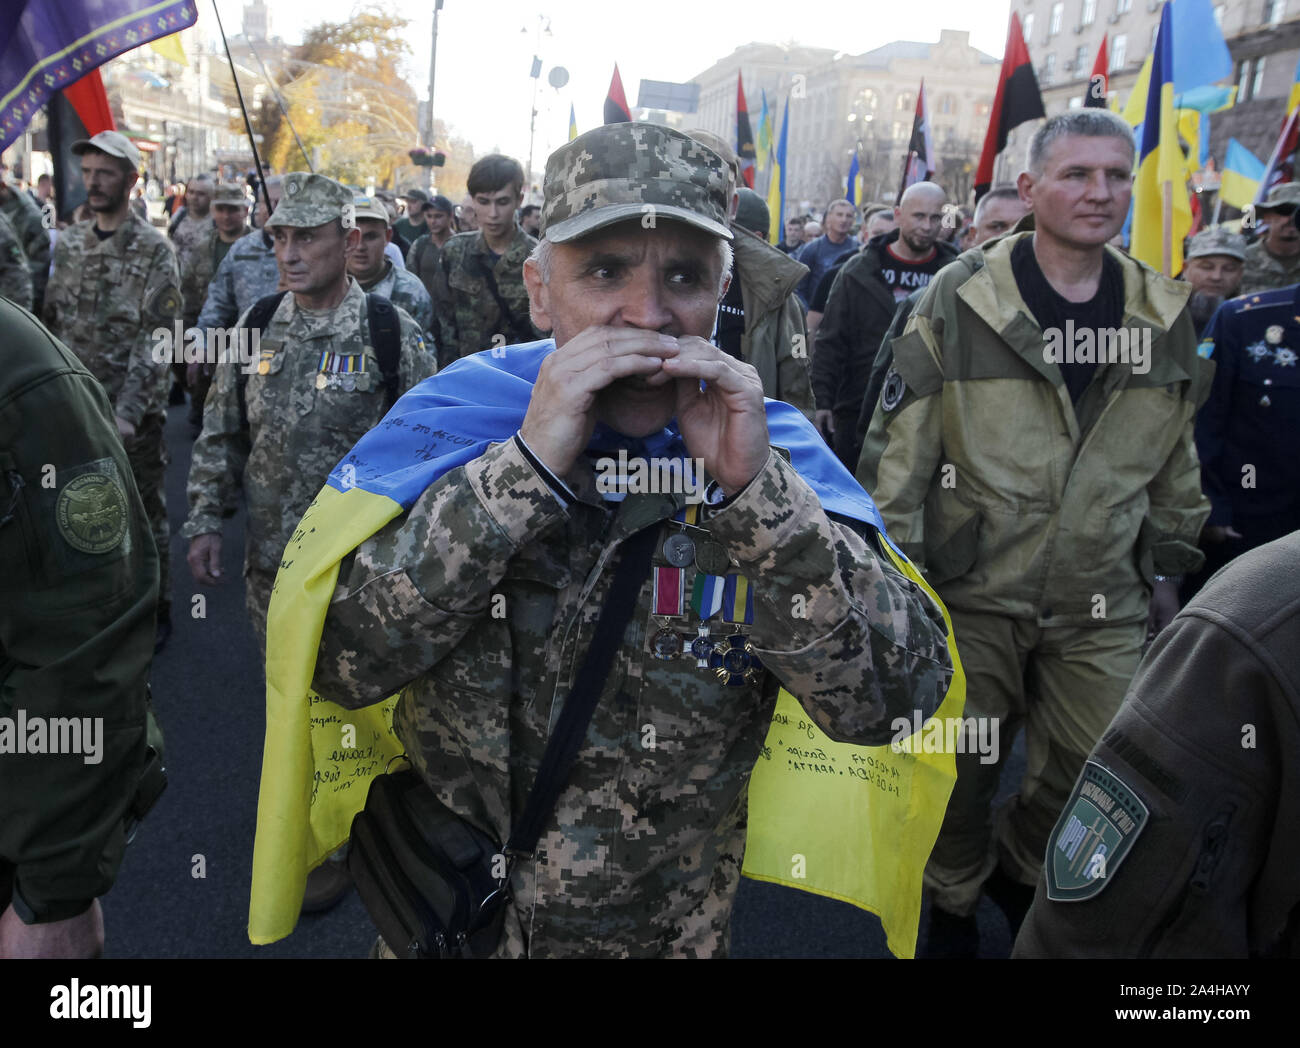 Последние новости из украинских источников. Украинские националисты. Современные украинцы. Украинские солдаты националисты.